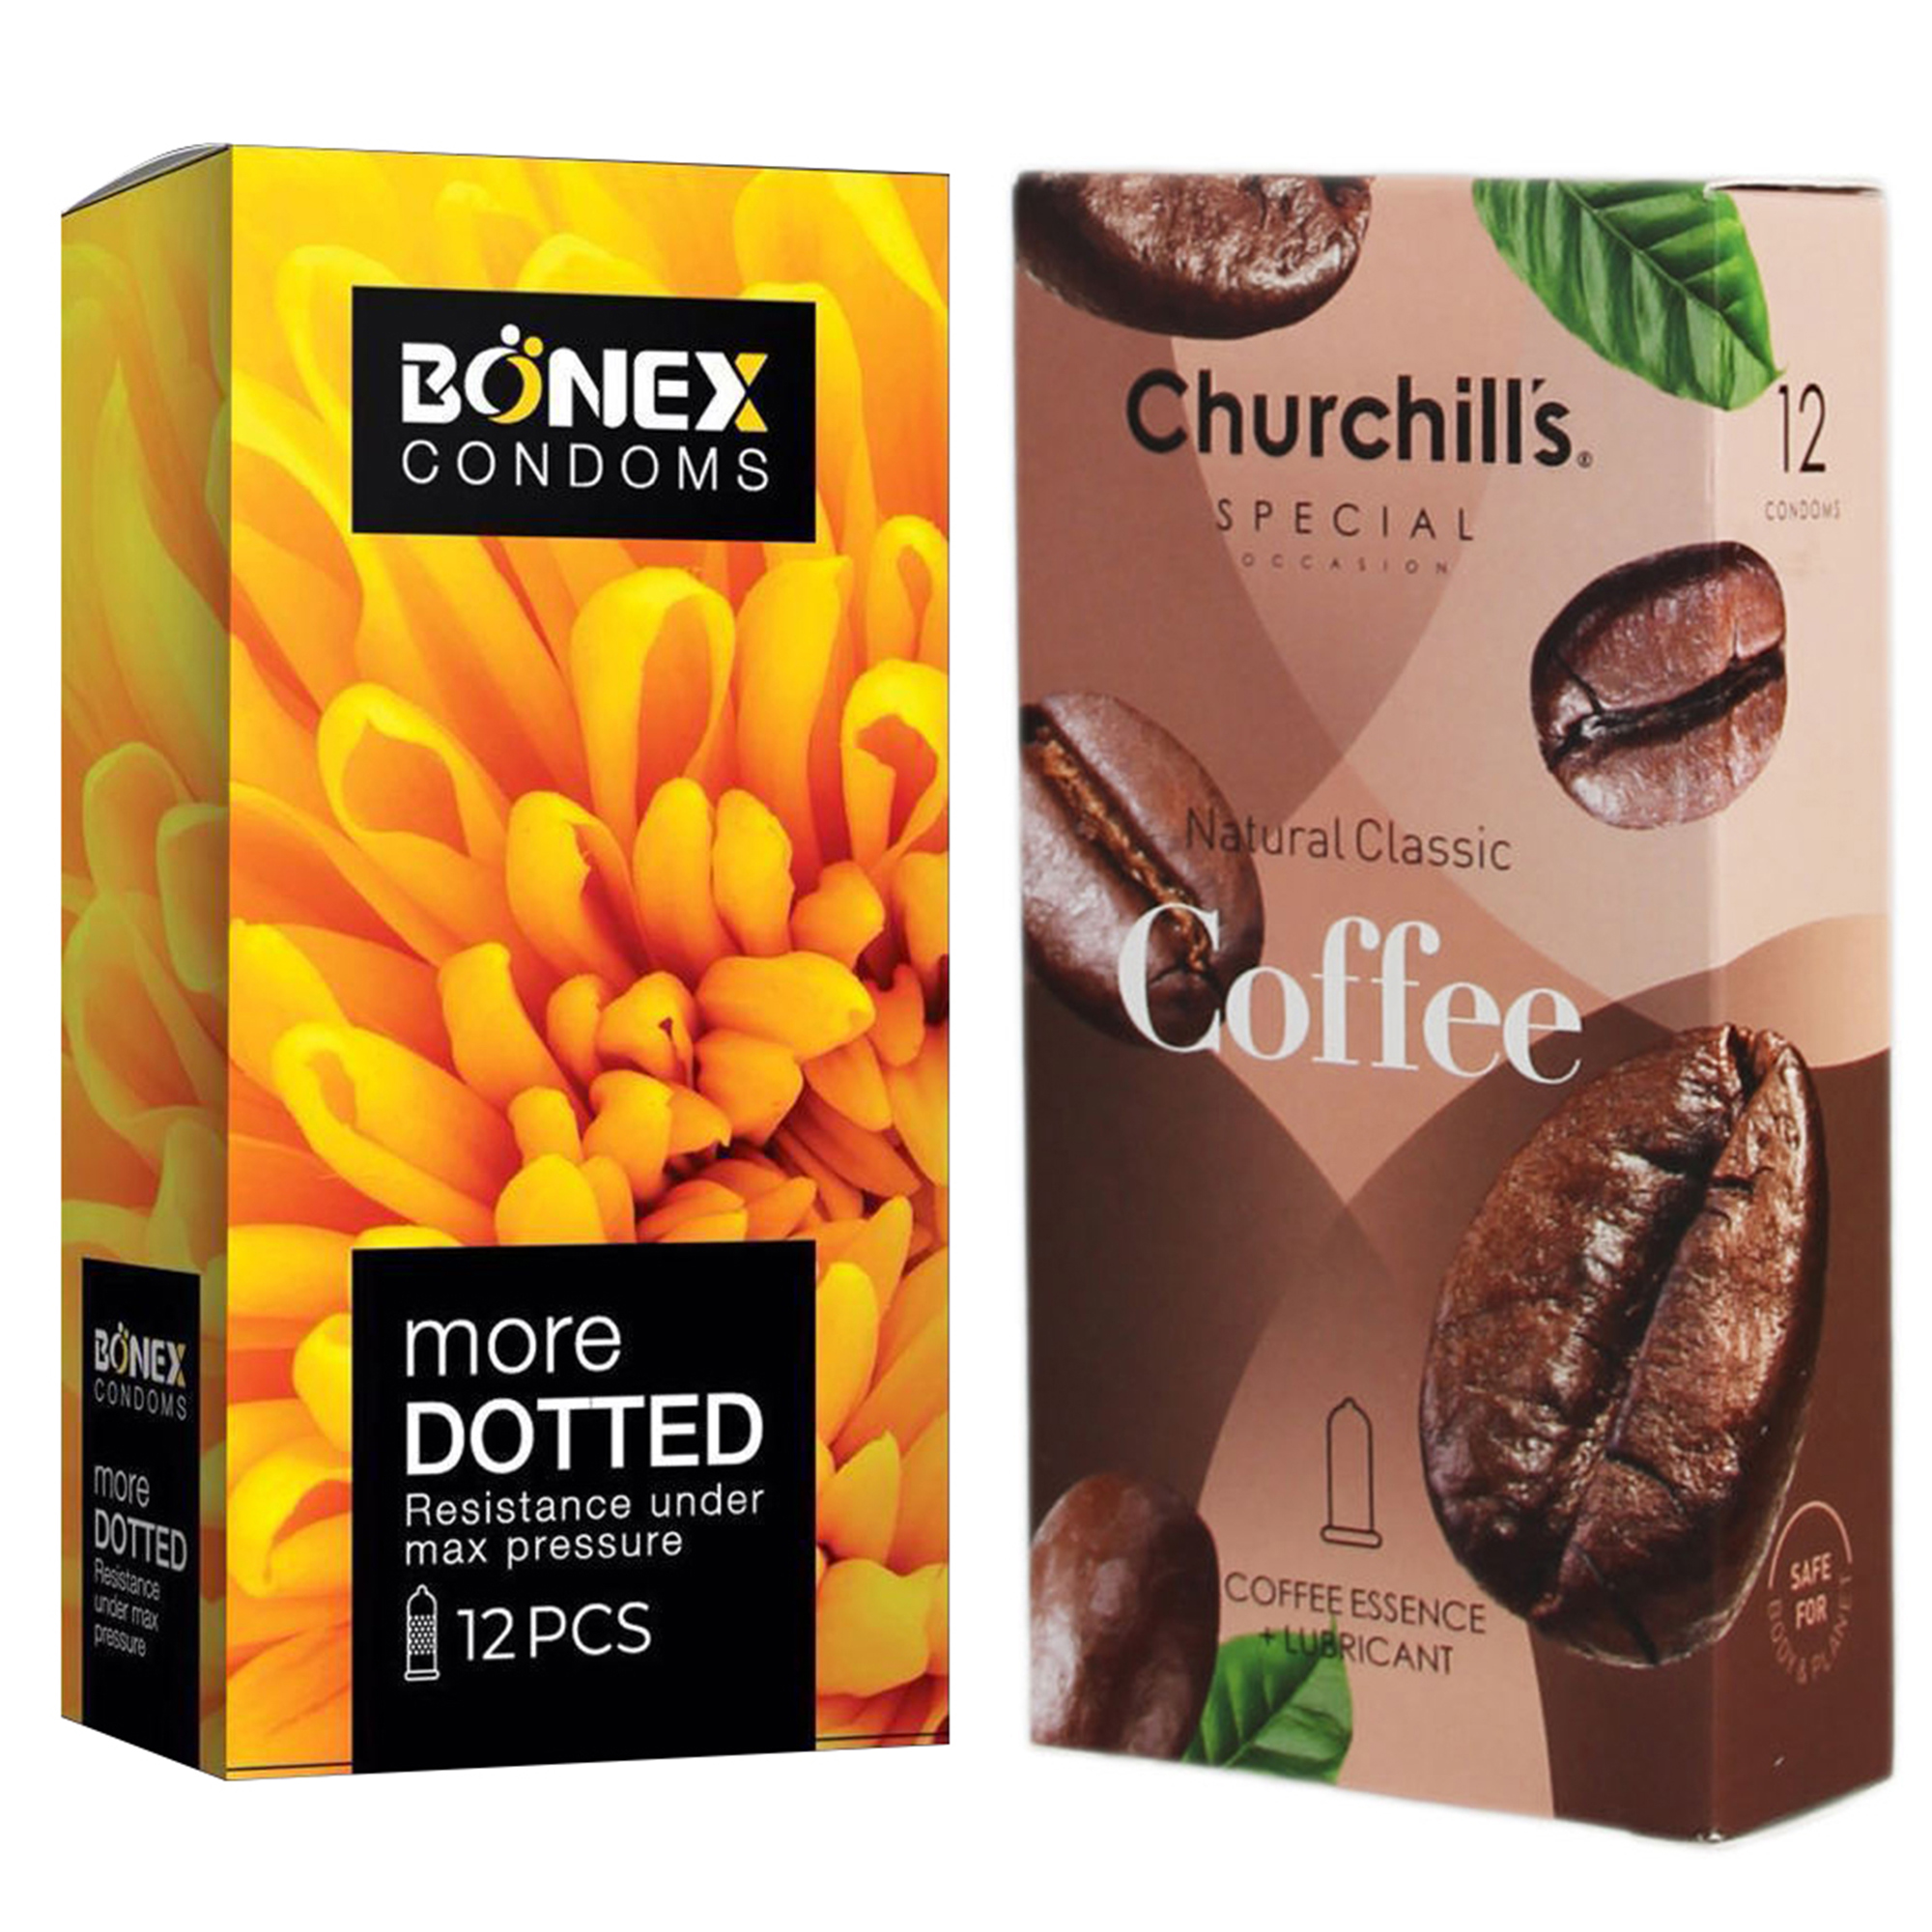 کاندوم چرچیلز مدل Coffee بسته 12 عددی به همراه کاندوم بونکس مدل More Dotted بسته 12 عددی 